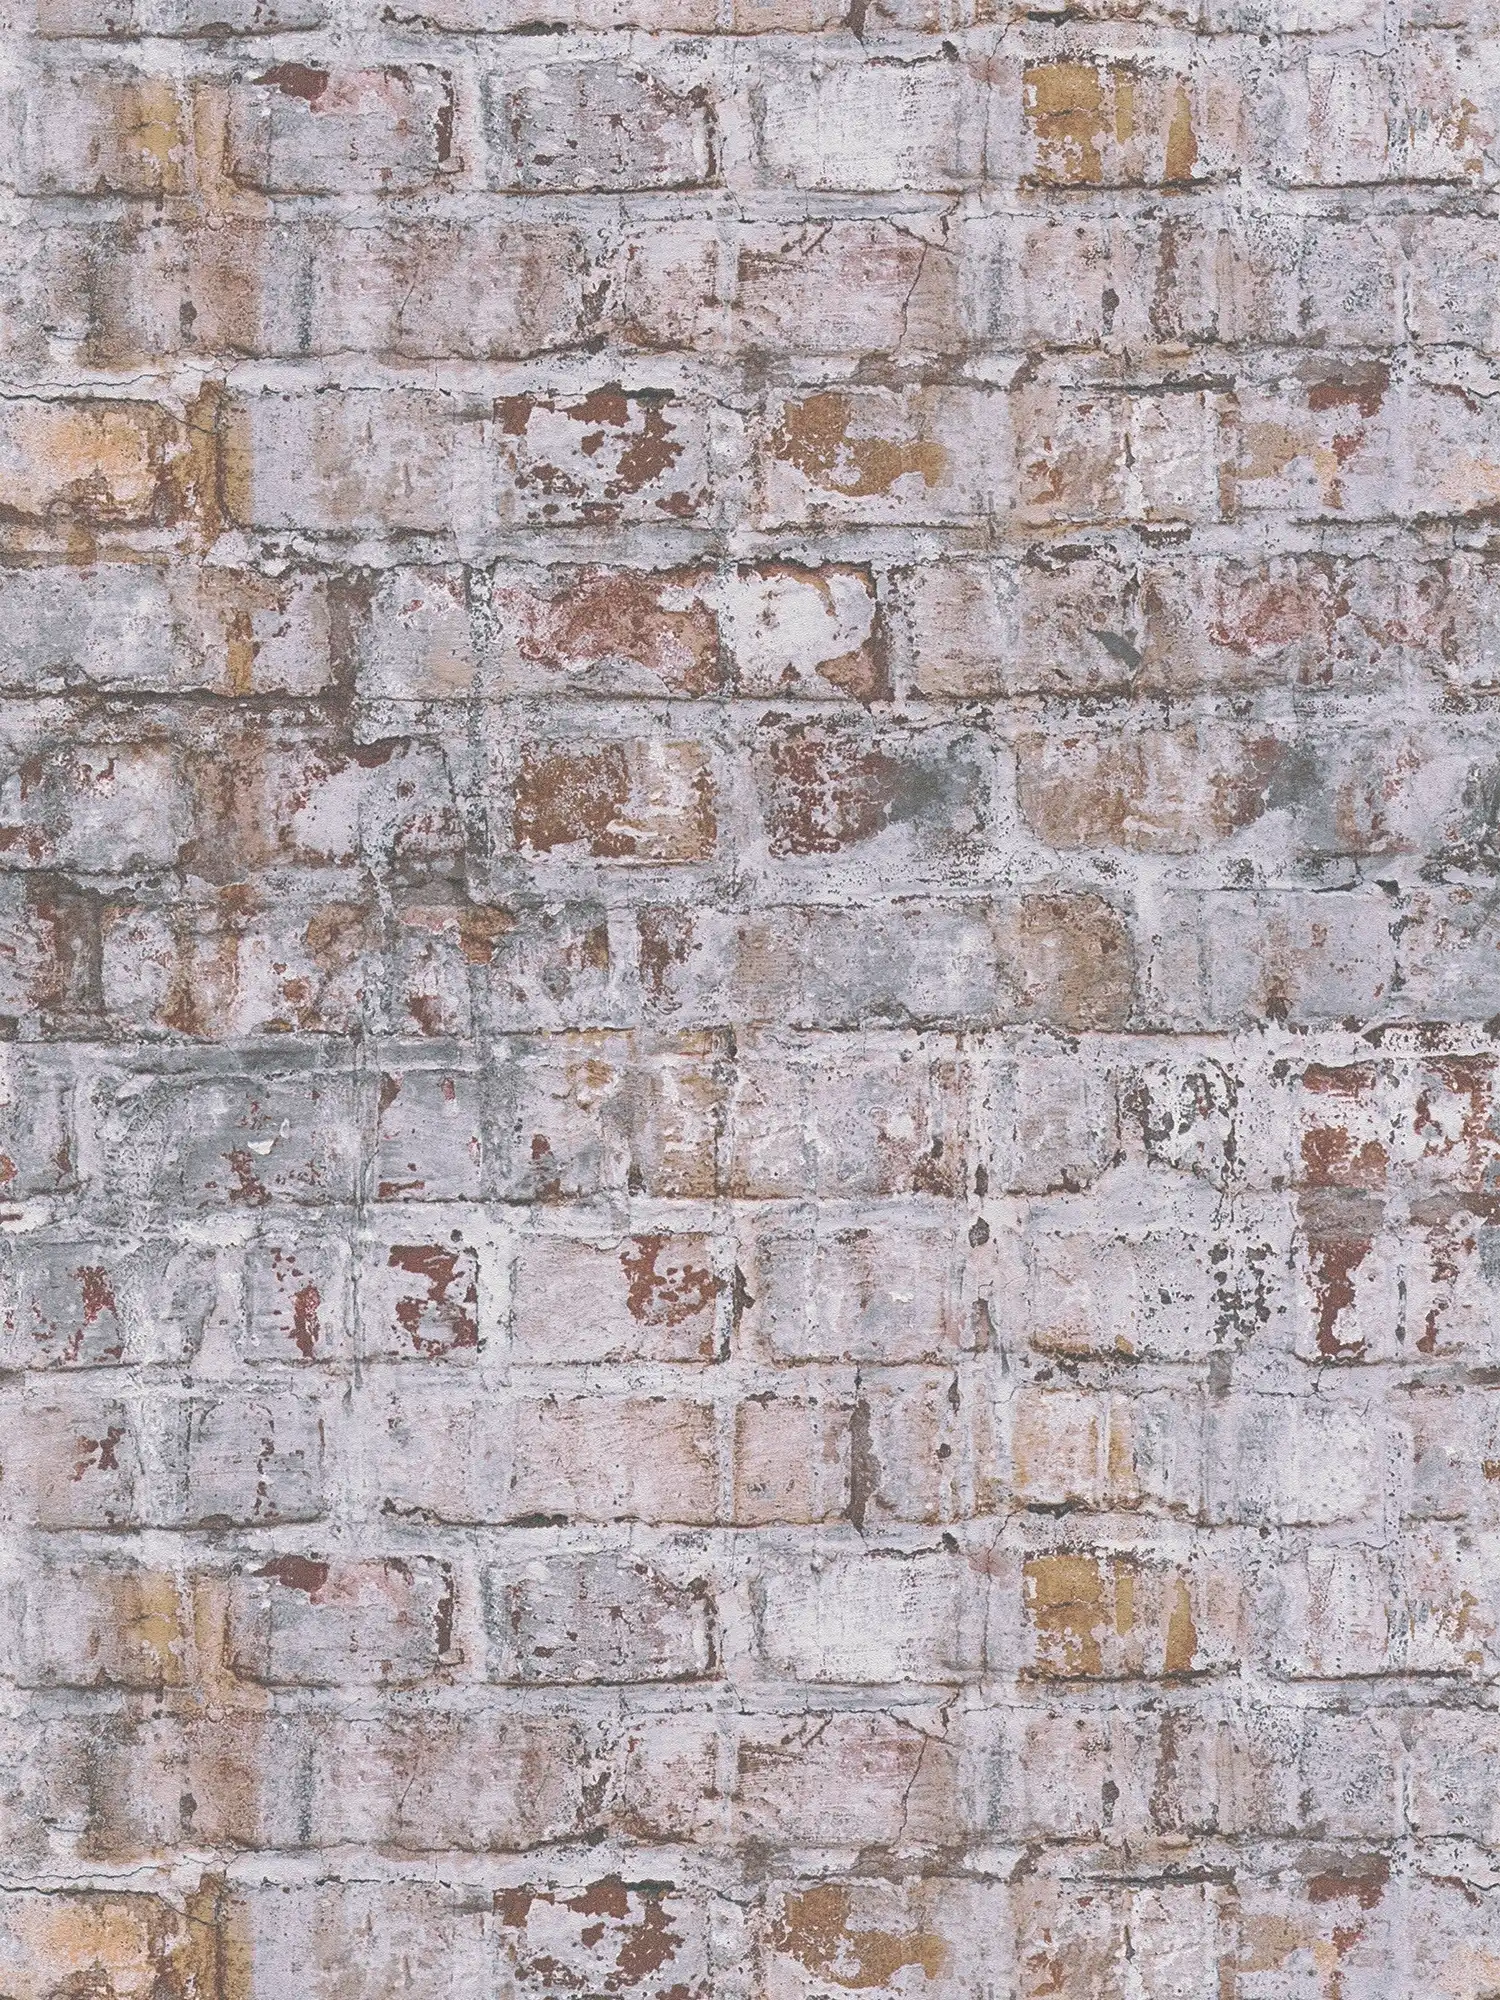 Vliestapete in Ziegelsteinoptik im Mauerdesign – grau, rostfarben, weiß
